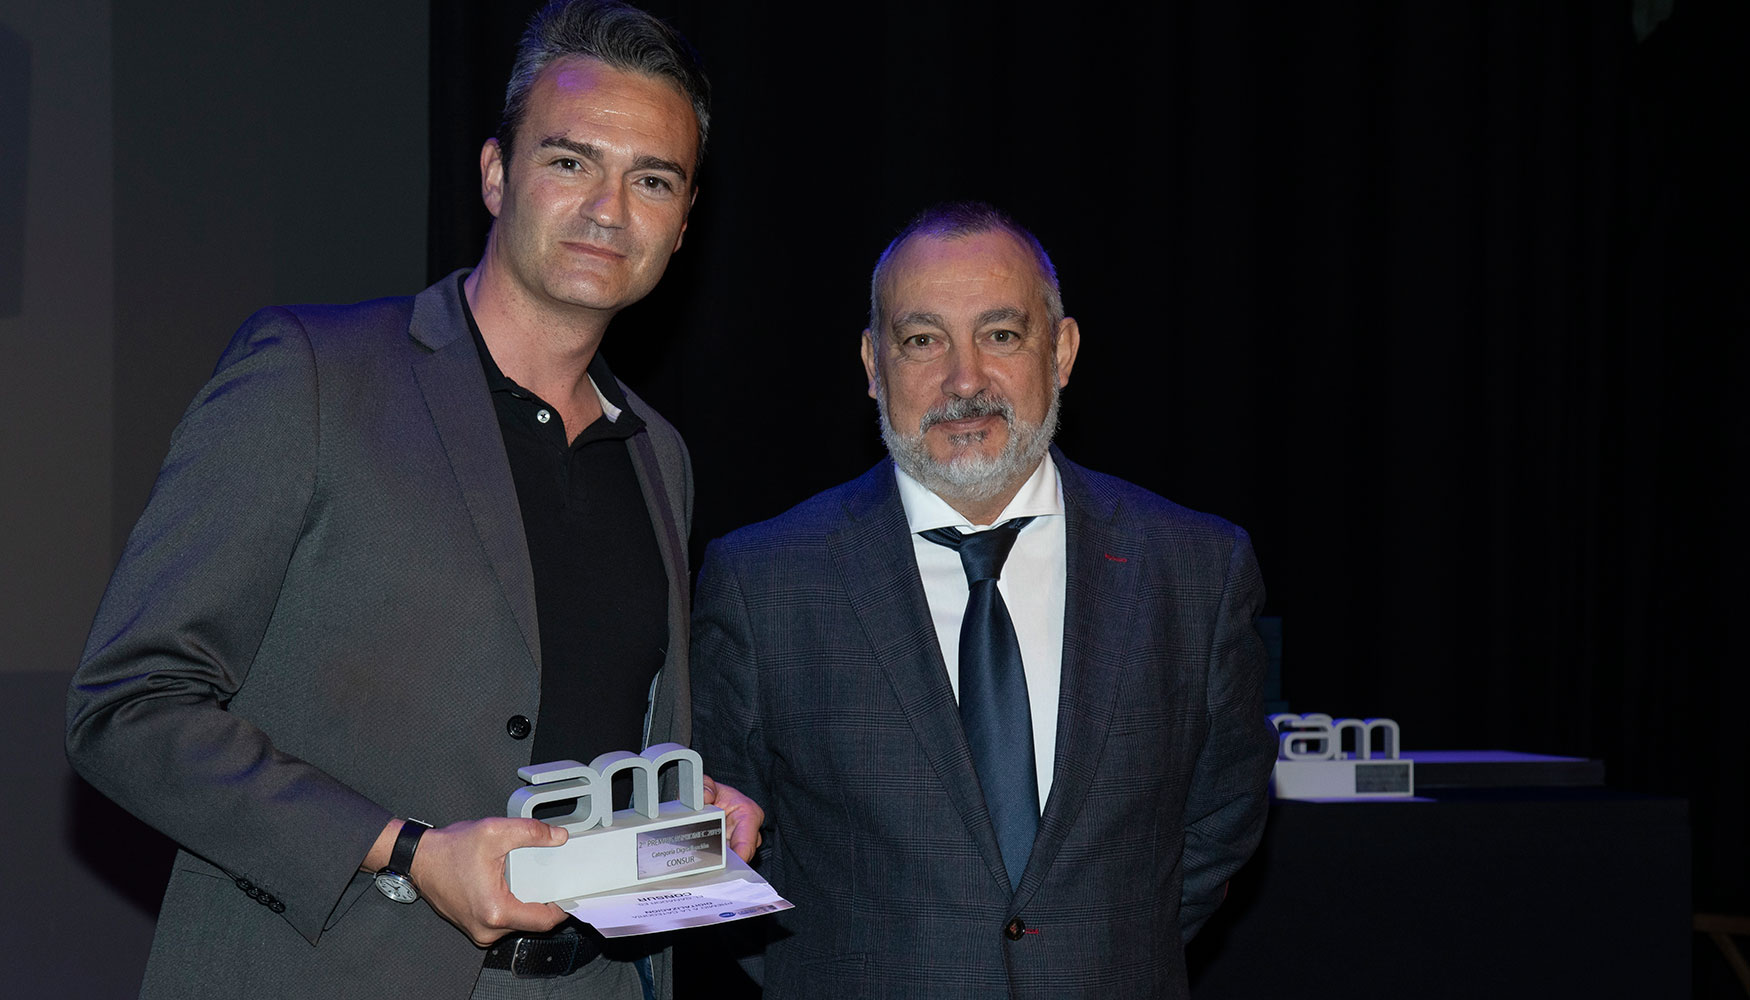 ngel Hernndez, vocal de Aspromec y director de Interempresas Media, fue el encargado de entregar el premio en la categora Digitalizacin...